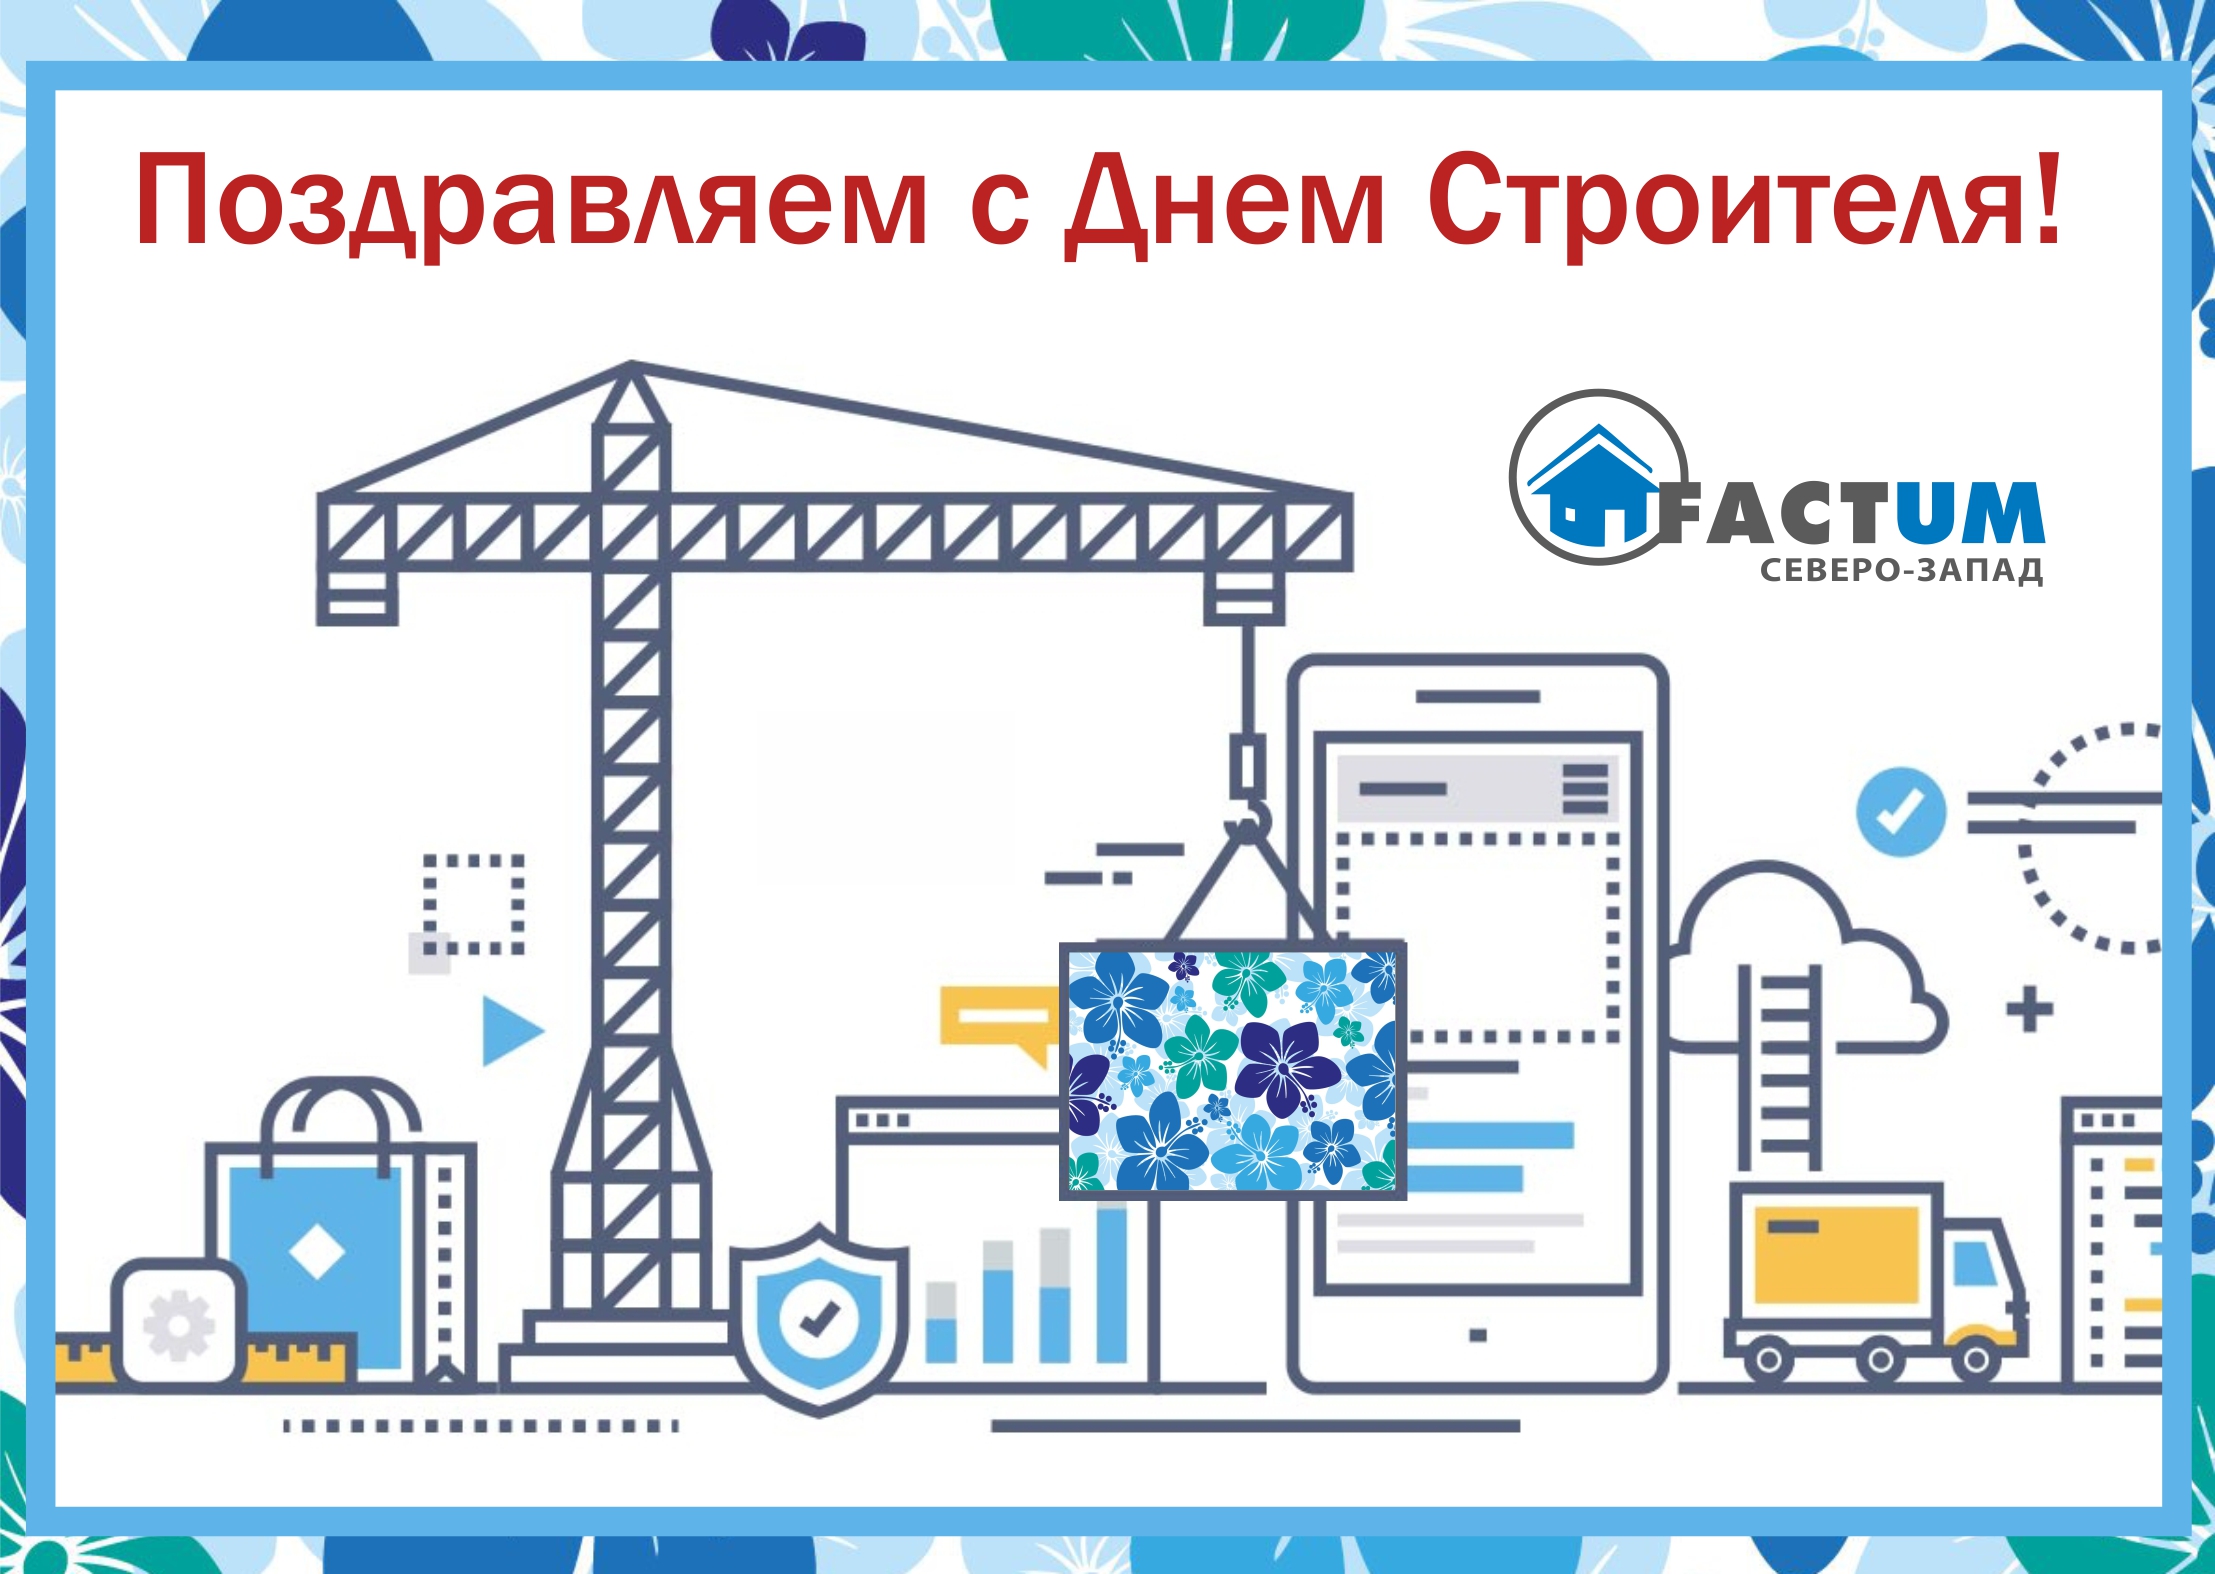 2 Компания «Фактум Северо-Запад», Санкт-Петербург | Пеноплэкс